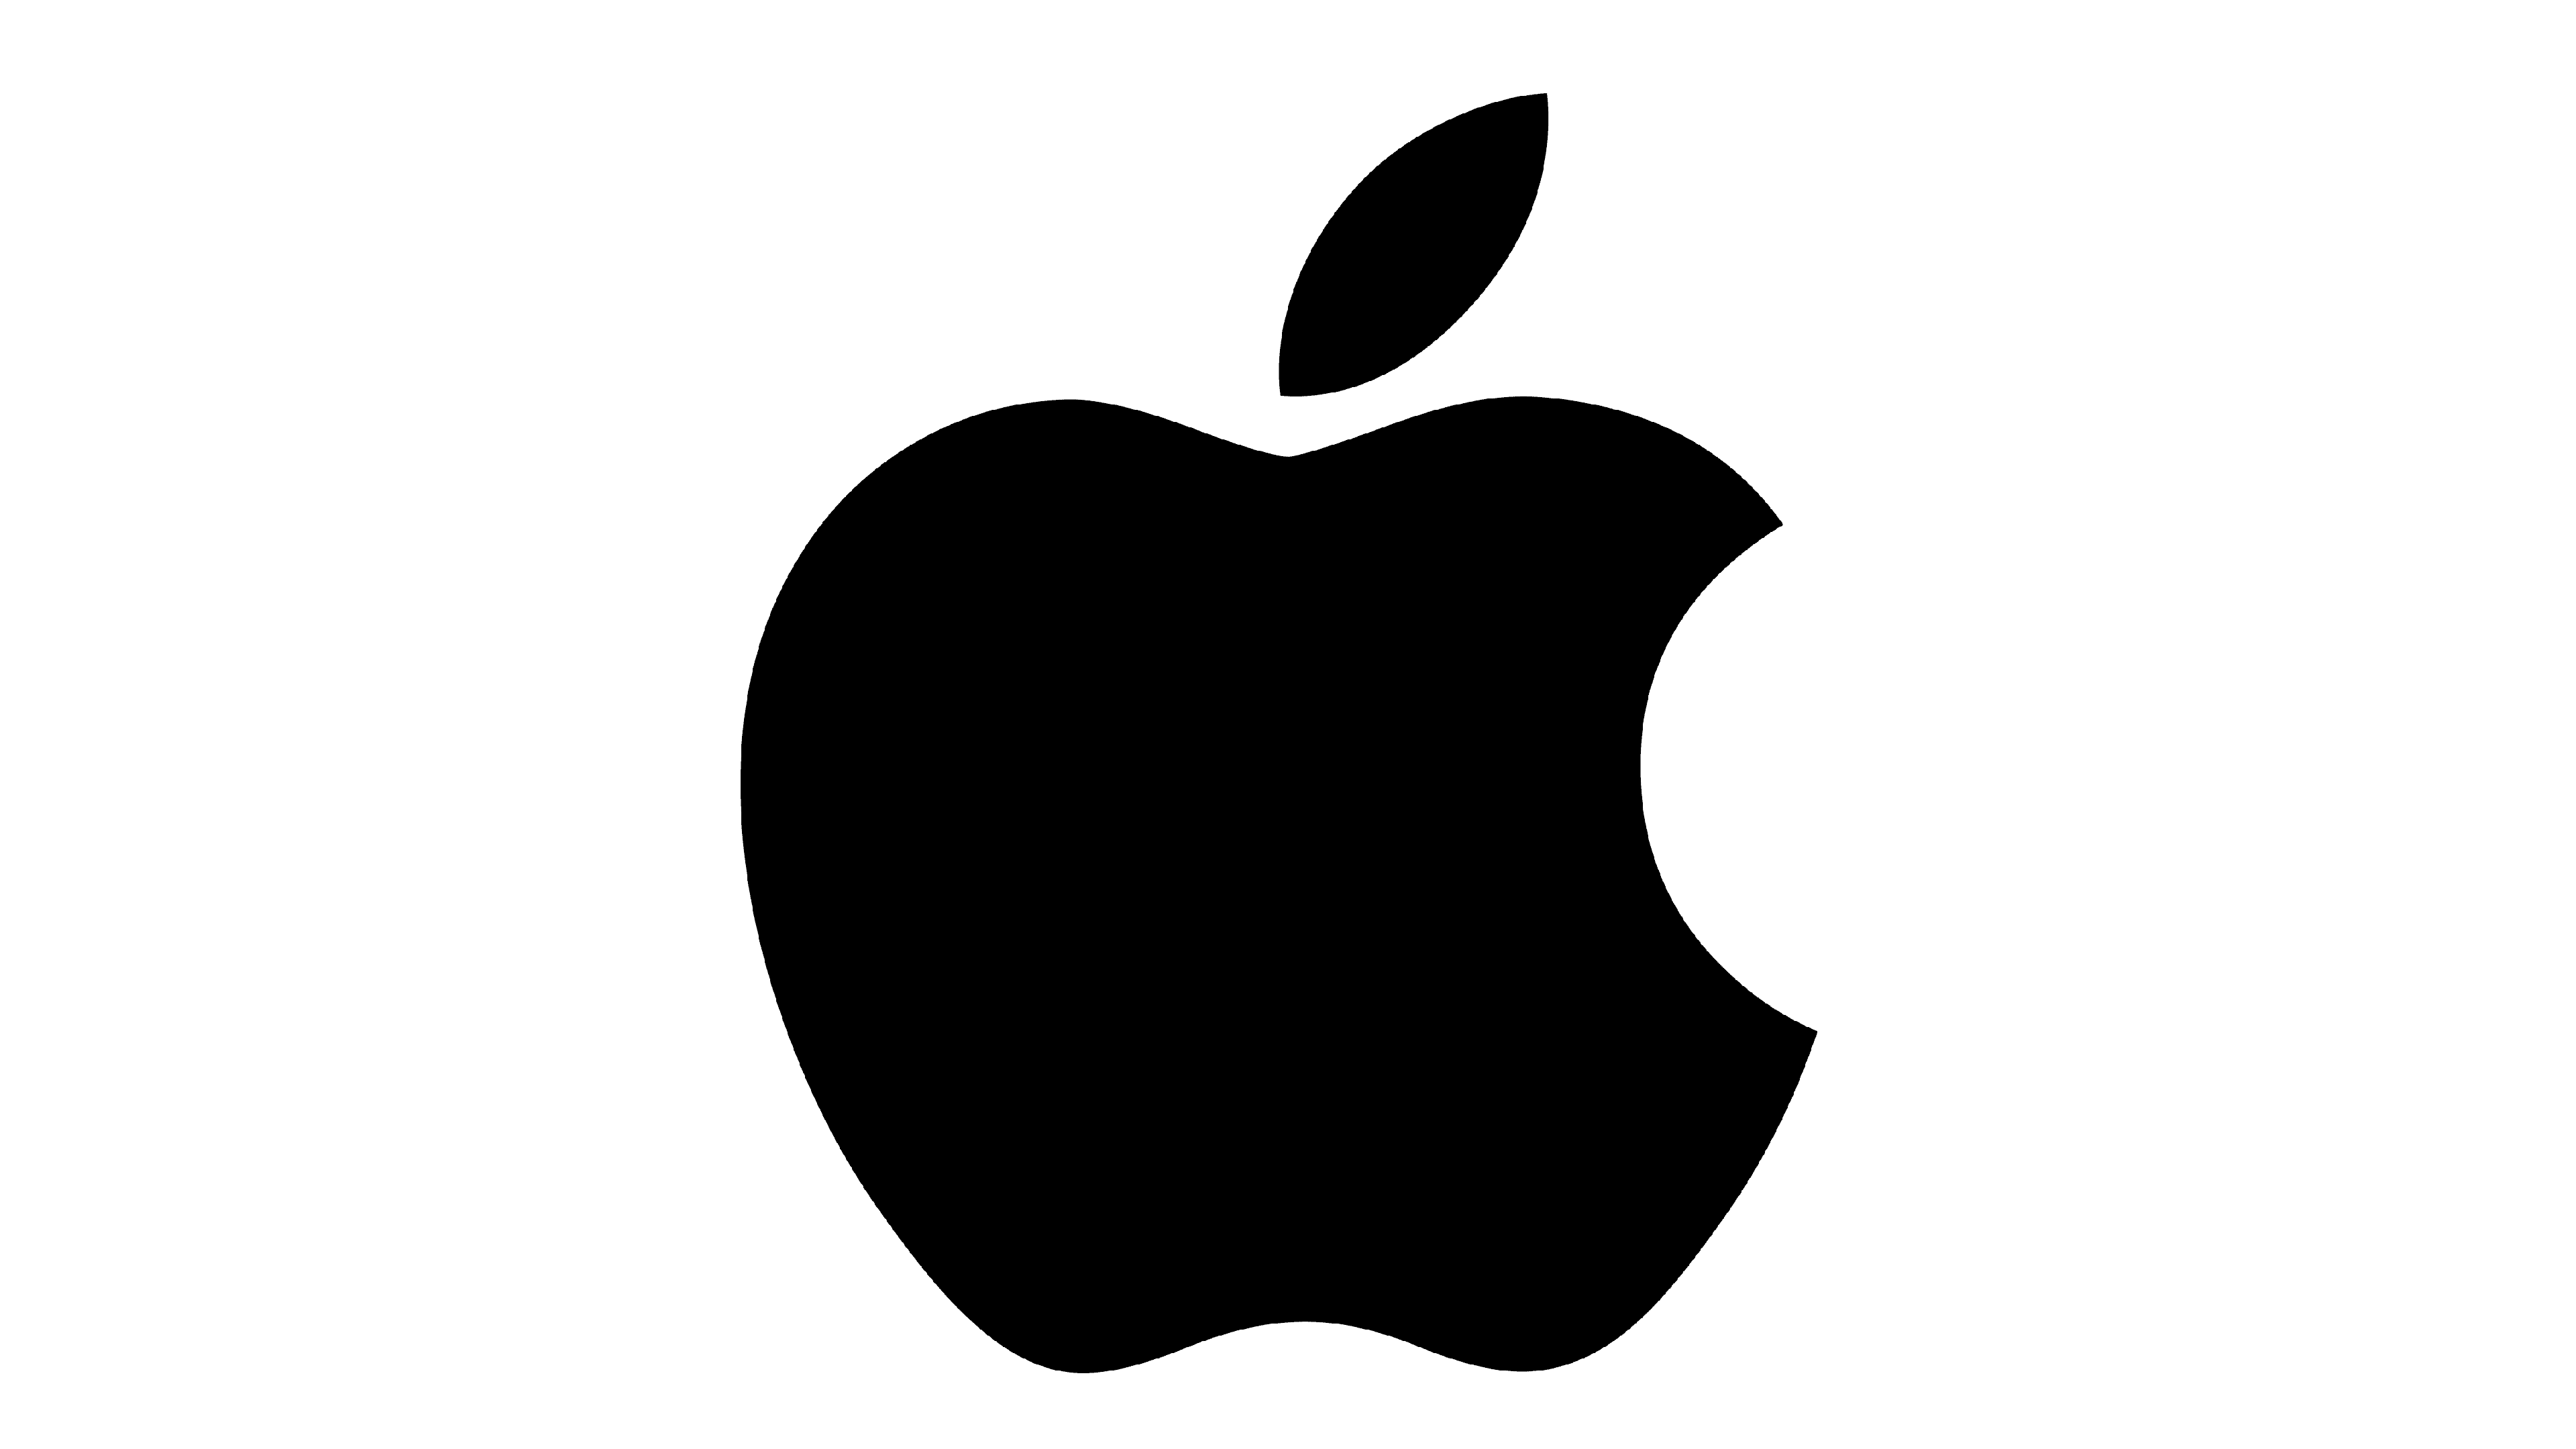 Apple Logo thiết kế đơn giản hiểu quả